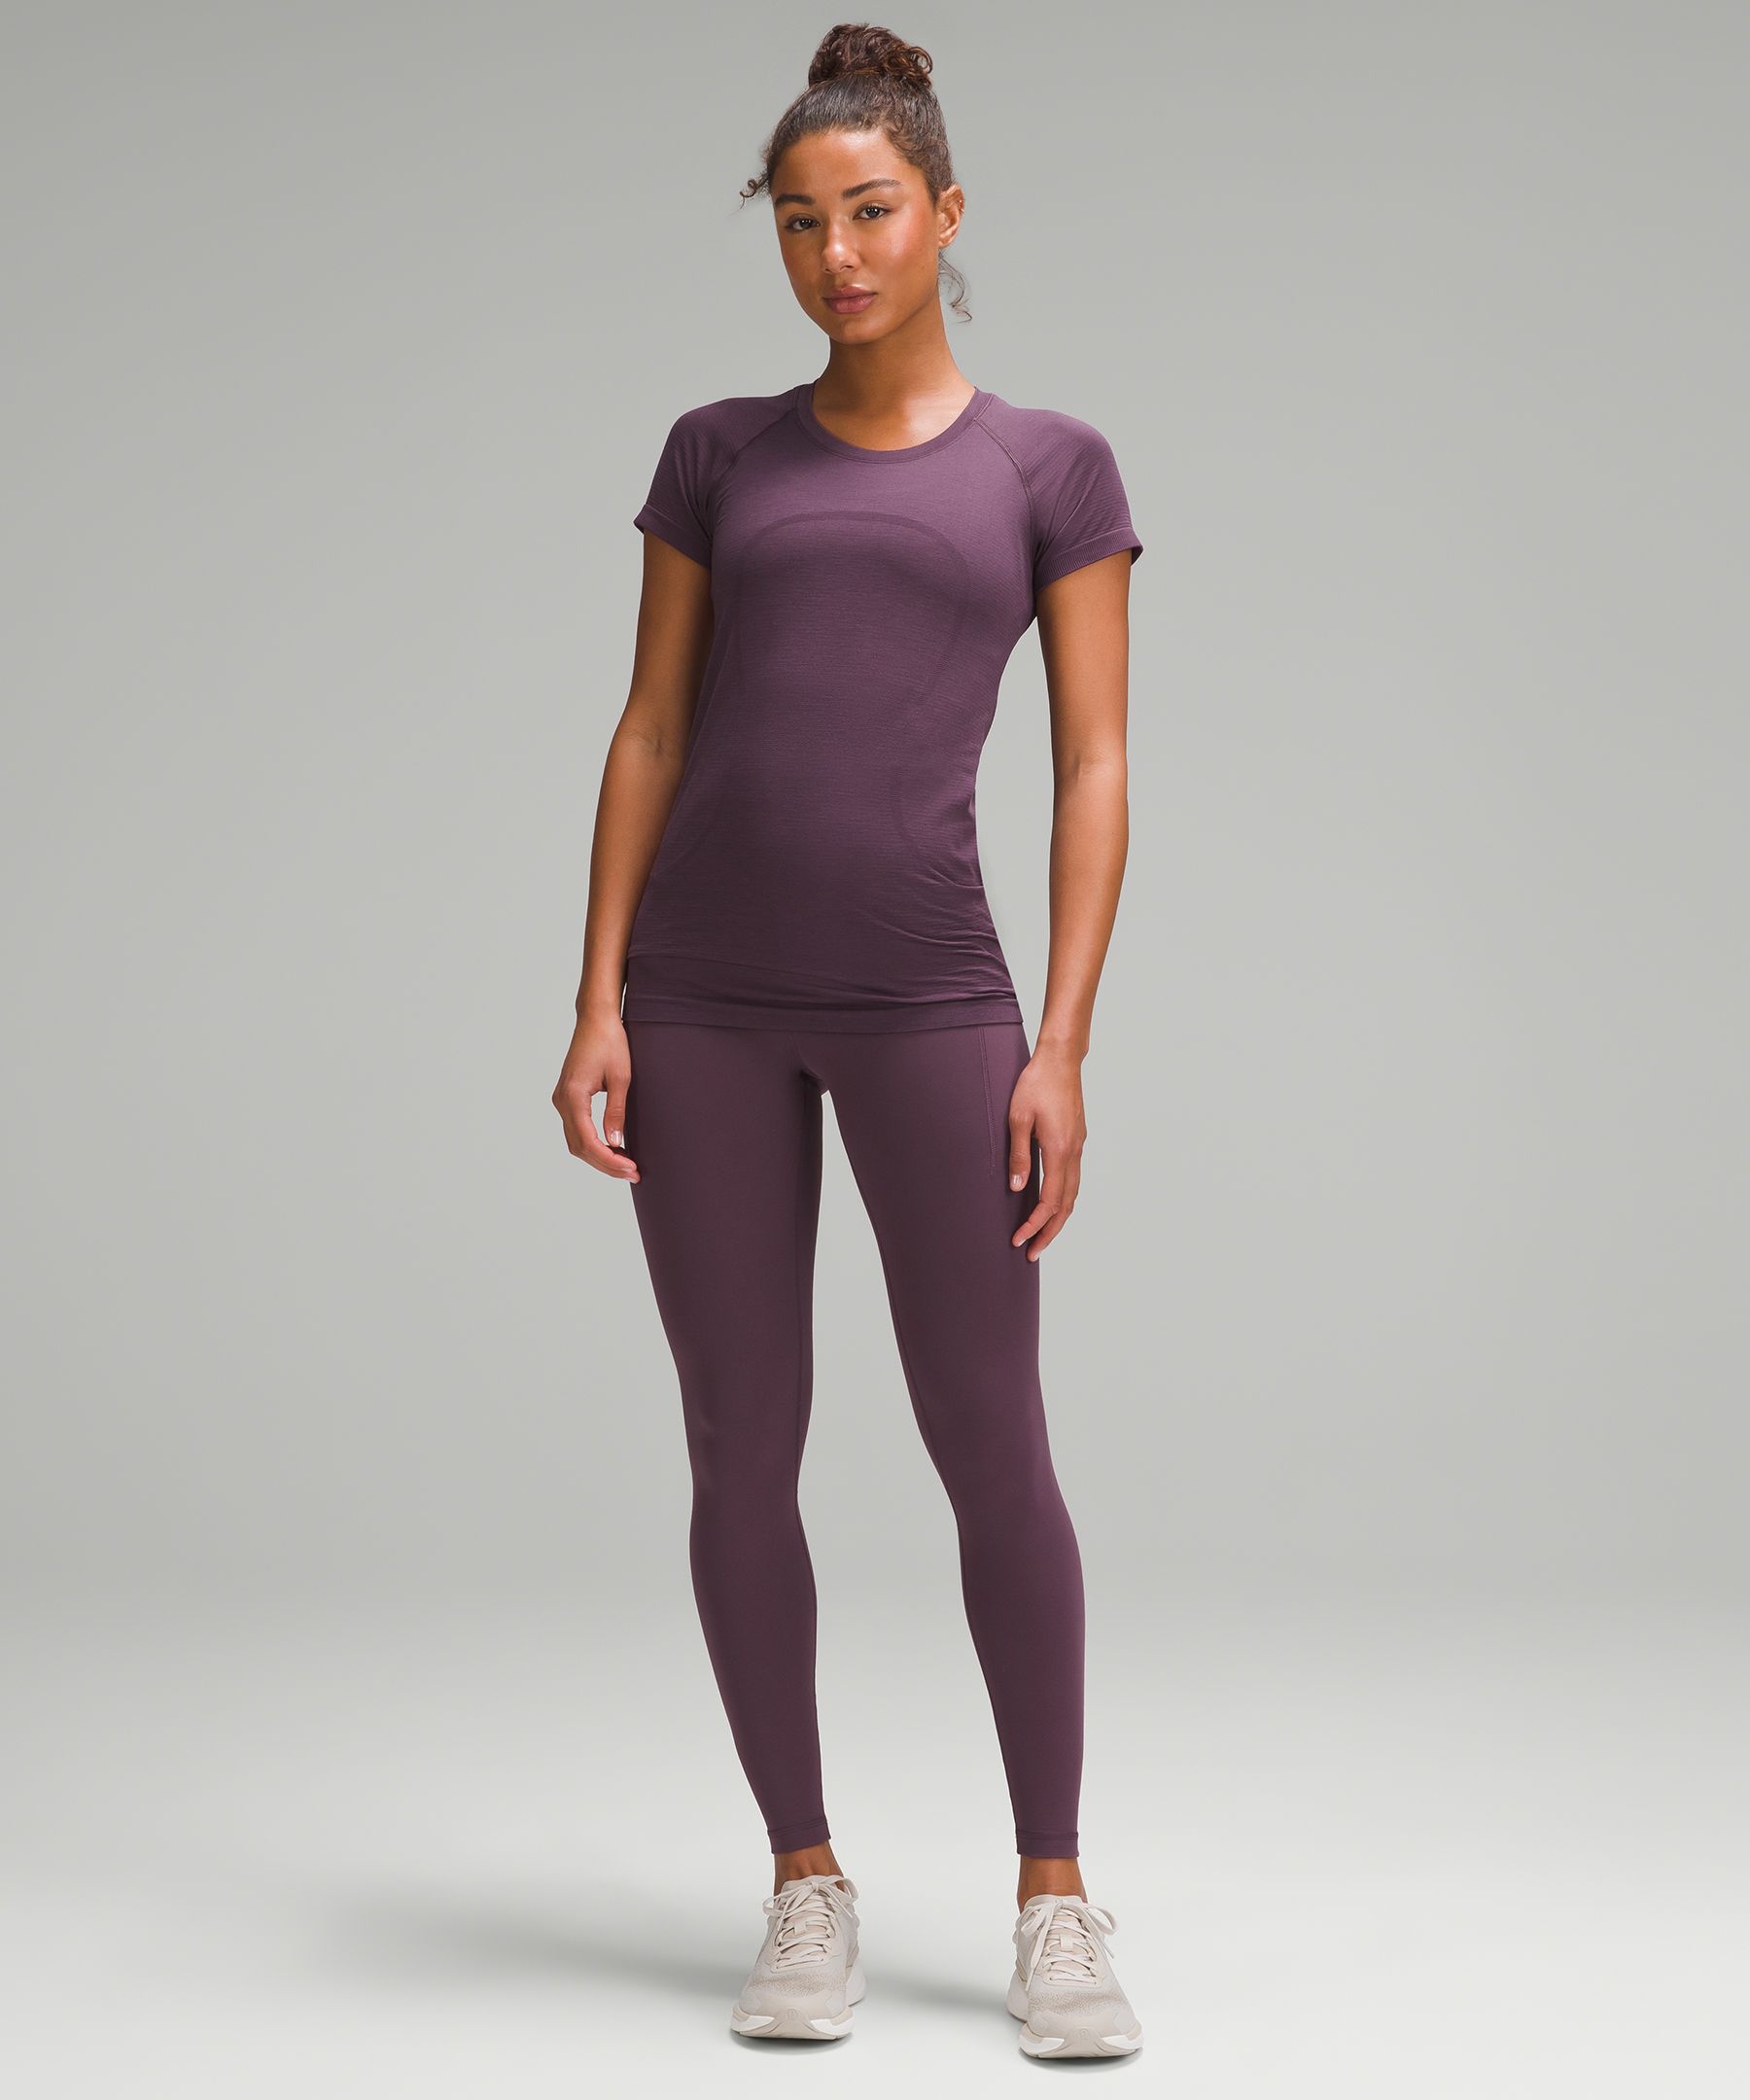 Women's Activewear & Yoga Gear | lululemon Canada